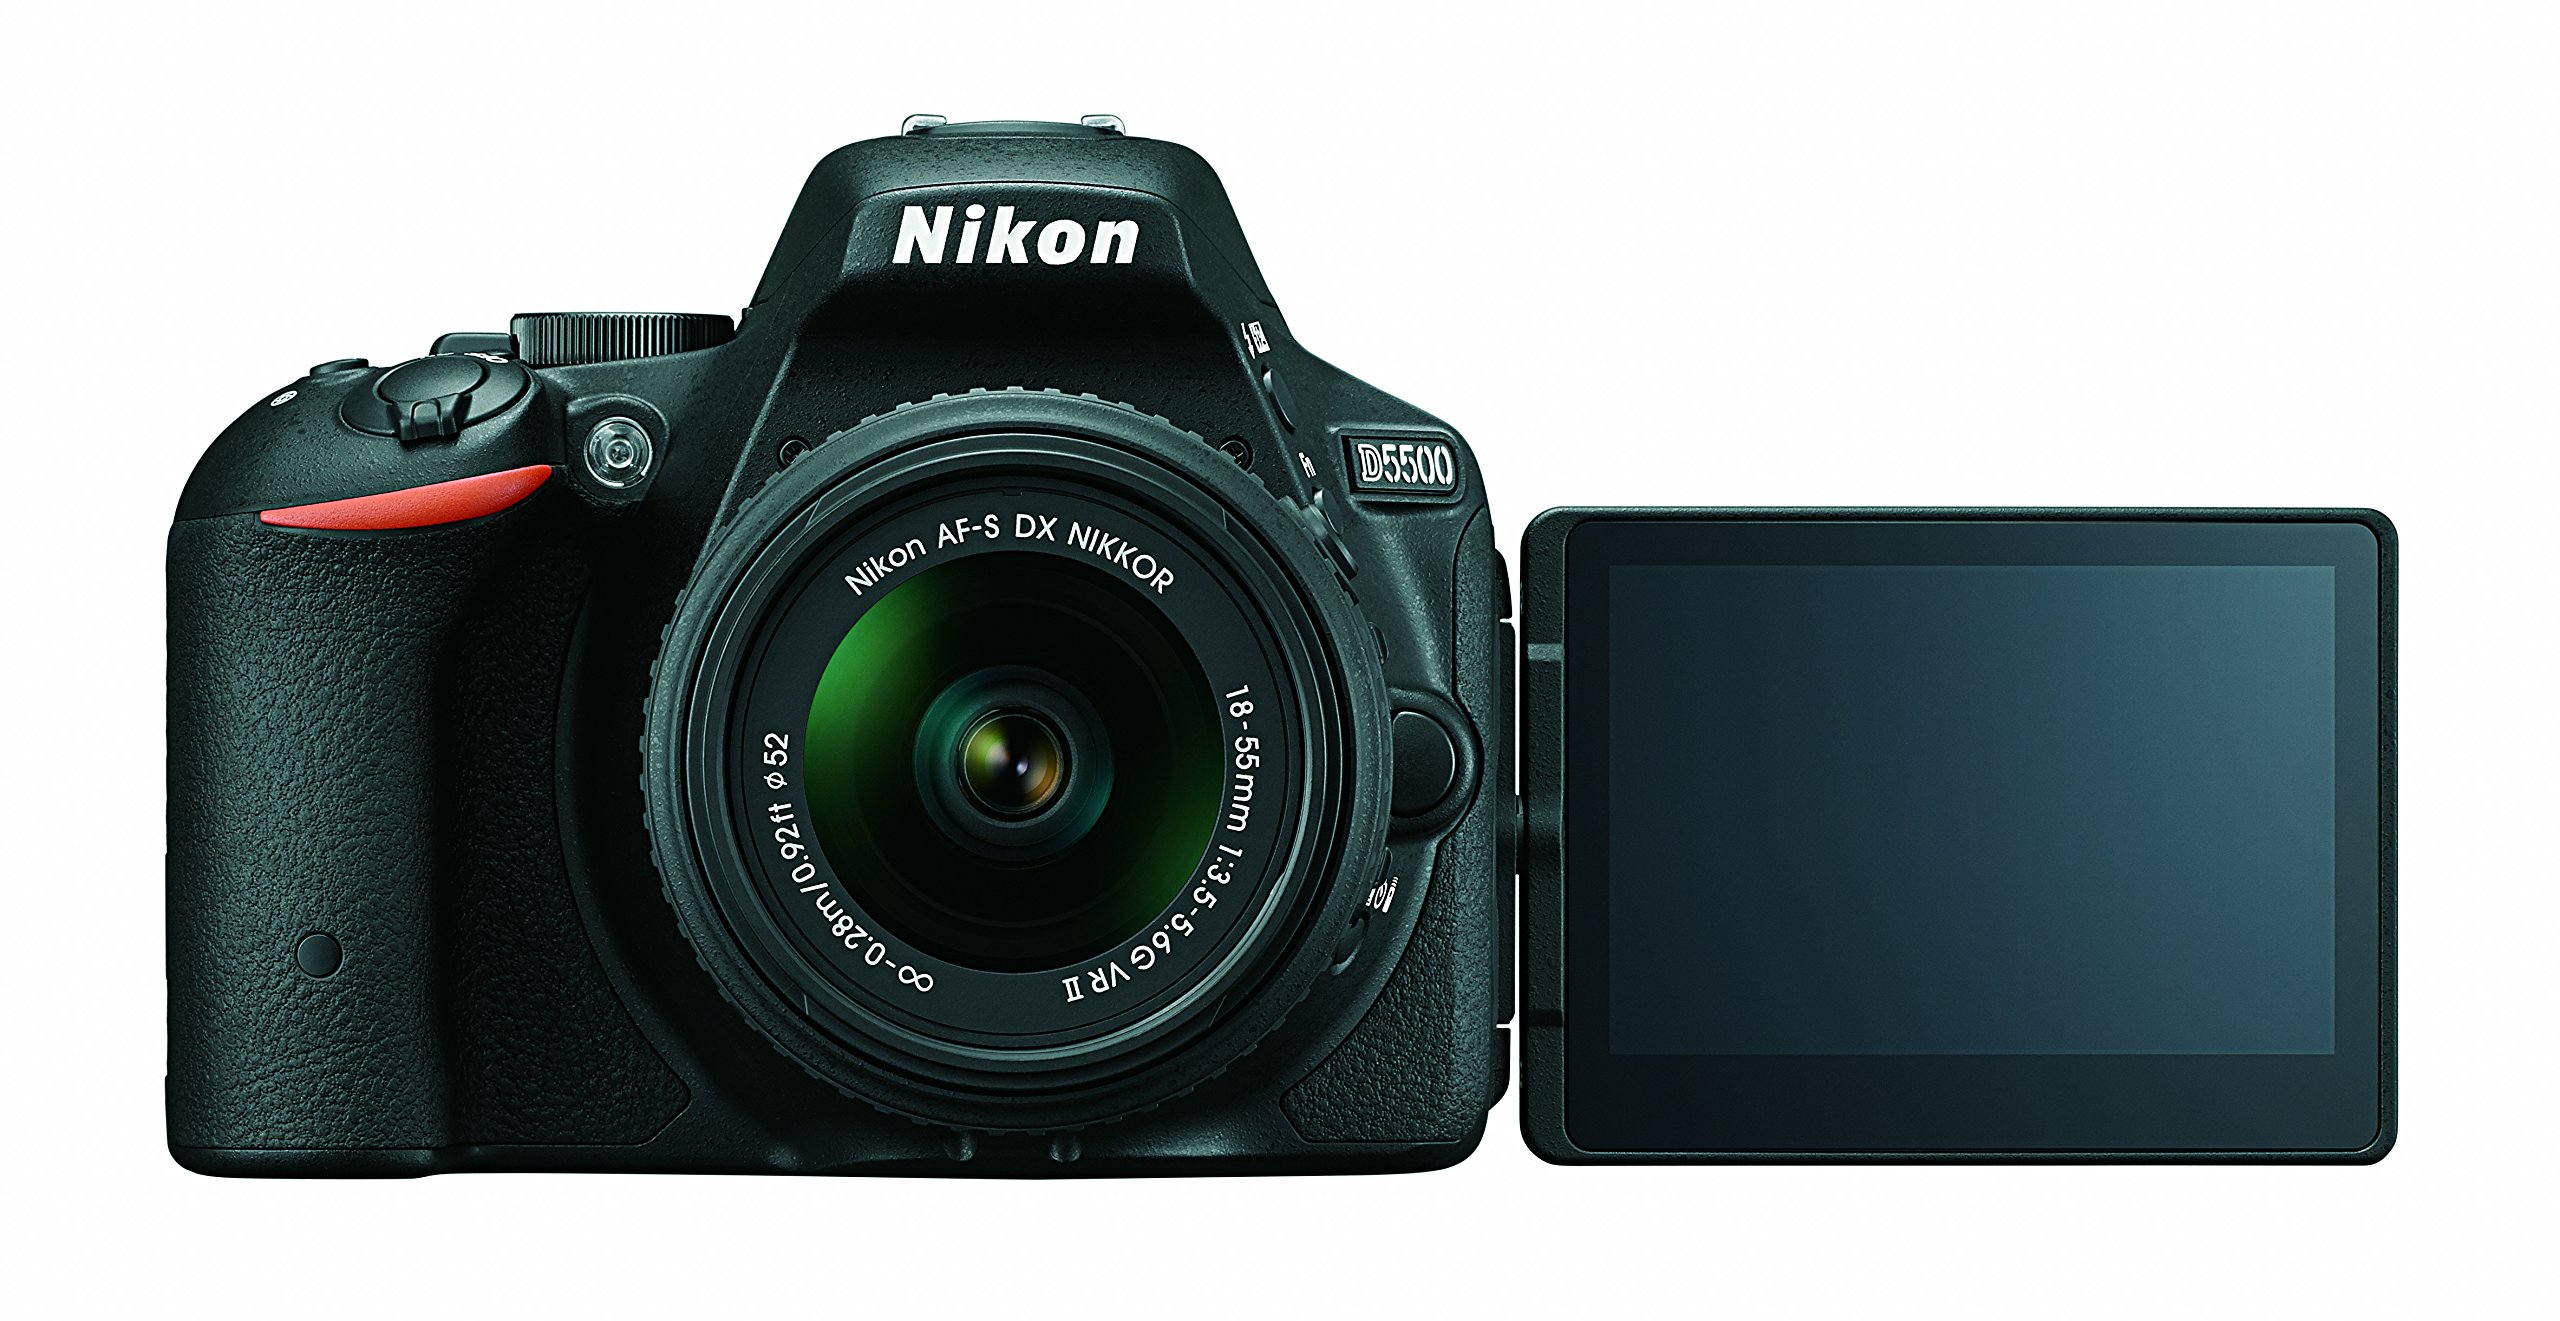 Nikon D5500 DX-format Digital SLR w/ 18-55mm VR II Kit (Black)